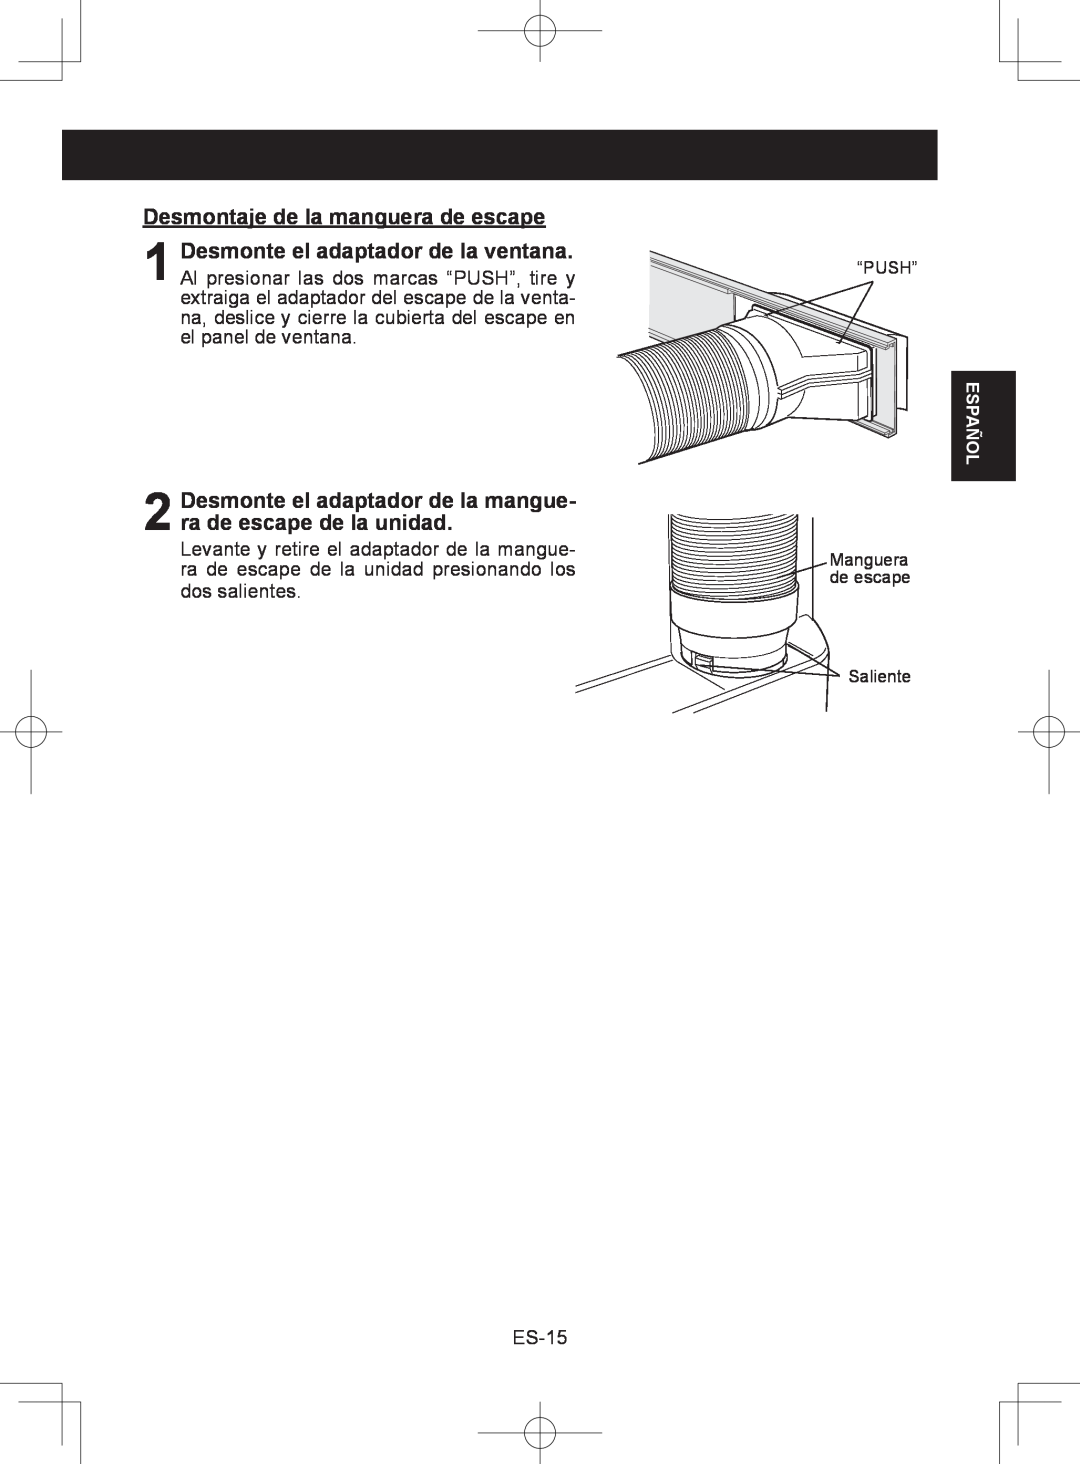 Sharp CV-2P10SC operation manual Desmontaje de la manguera de escape 